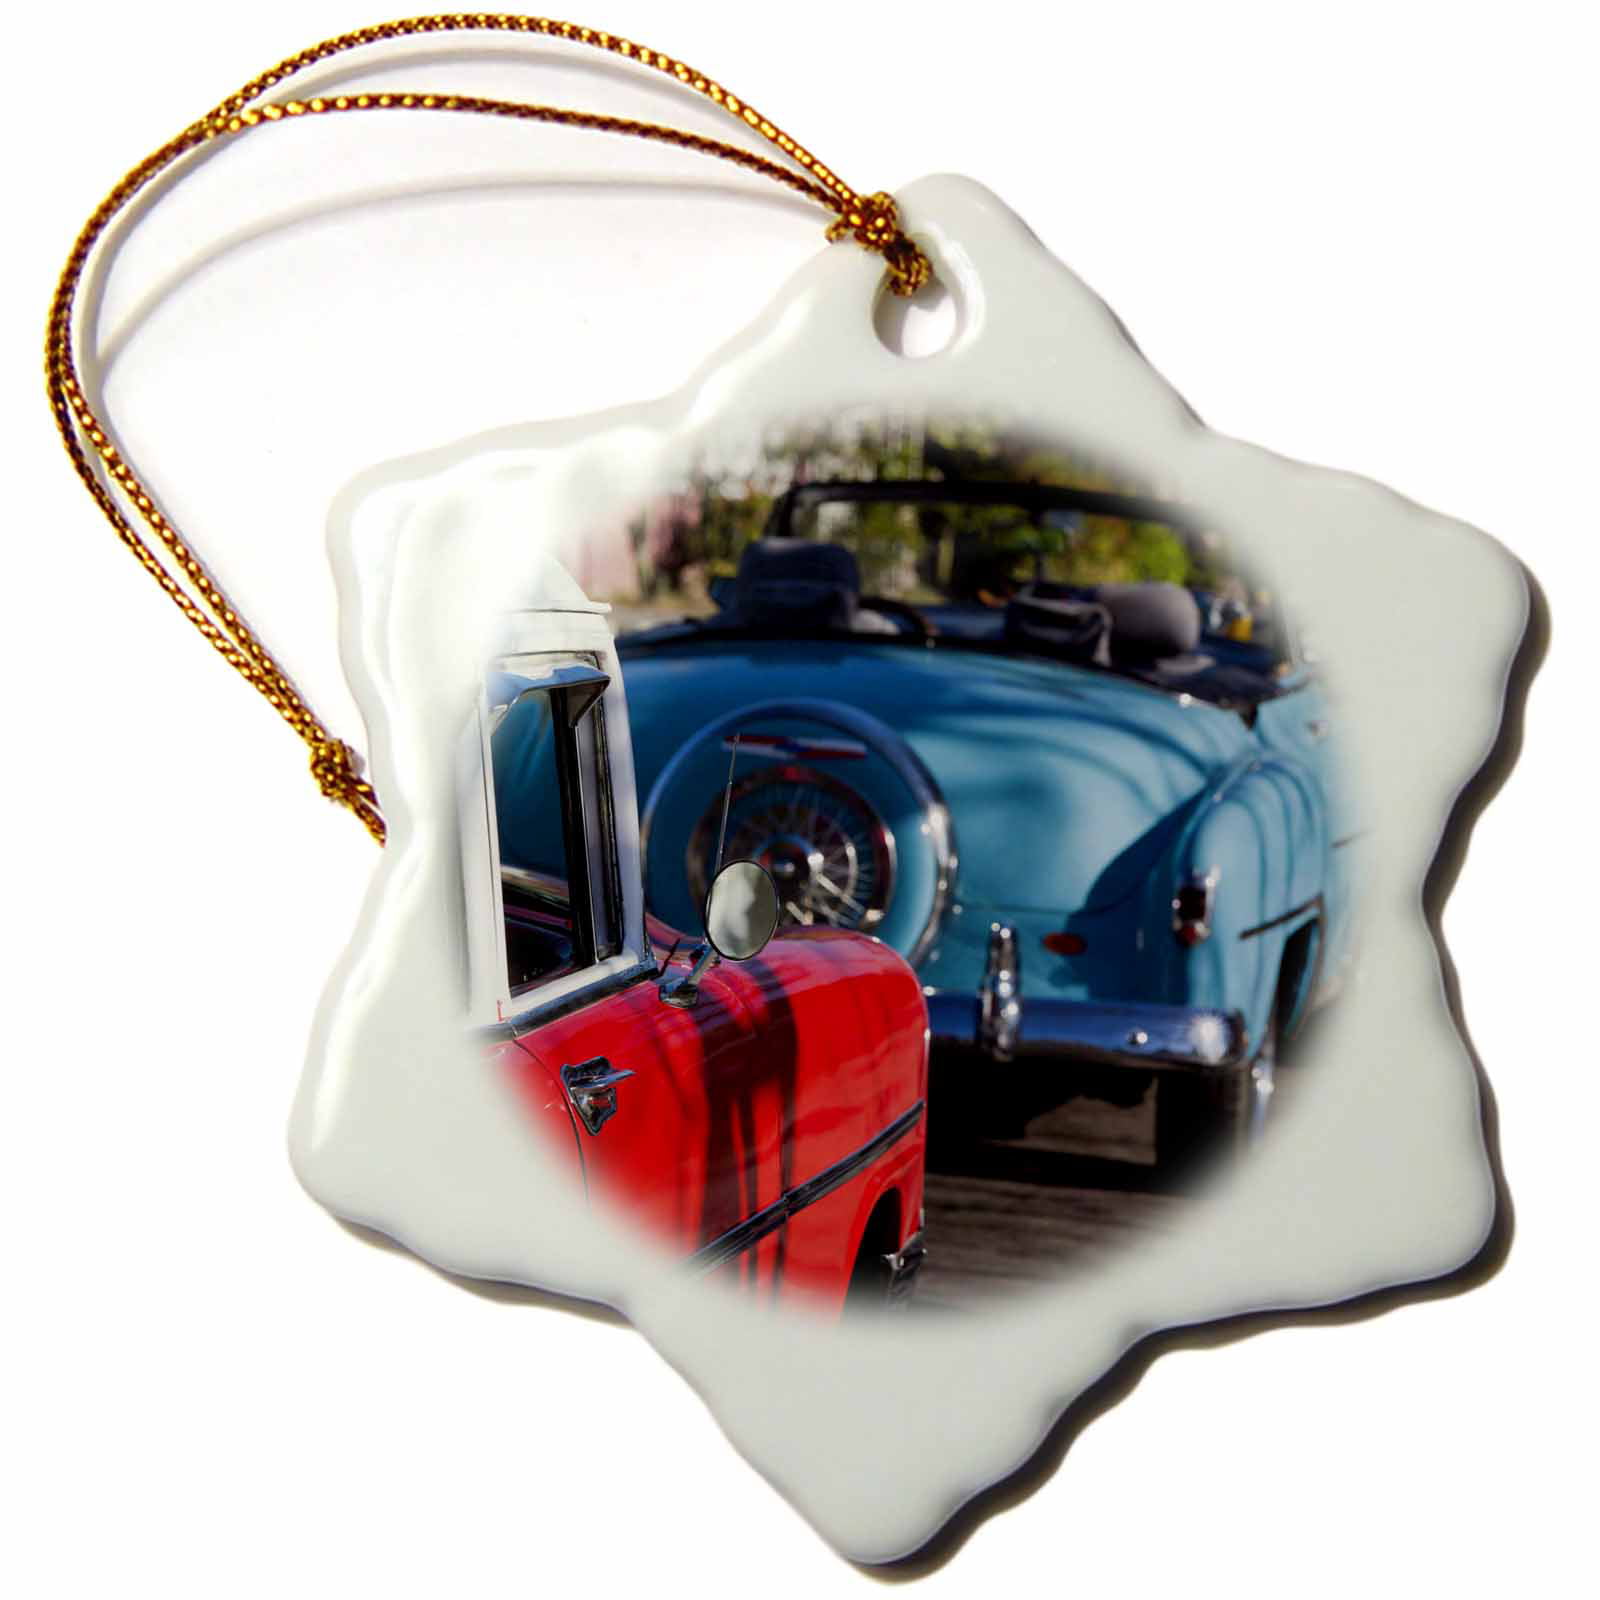 3dRose Cuba, Varadero, 1950s classic cars - CA11 WBI0955 - Walter Bibikow - Snowflake Ornament, 3-inch